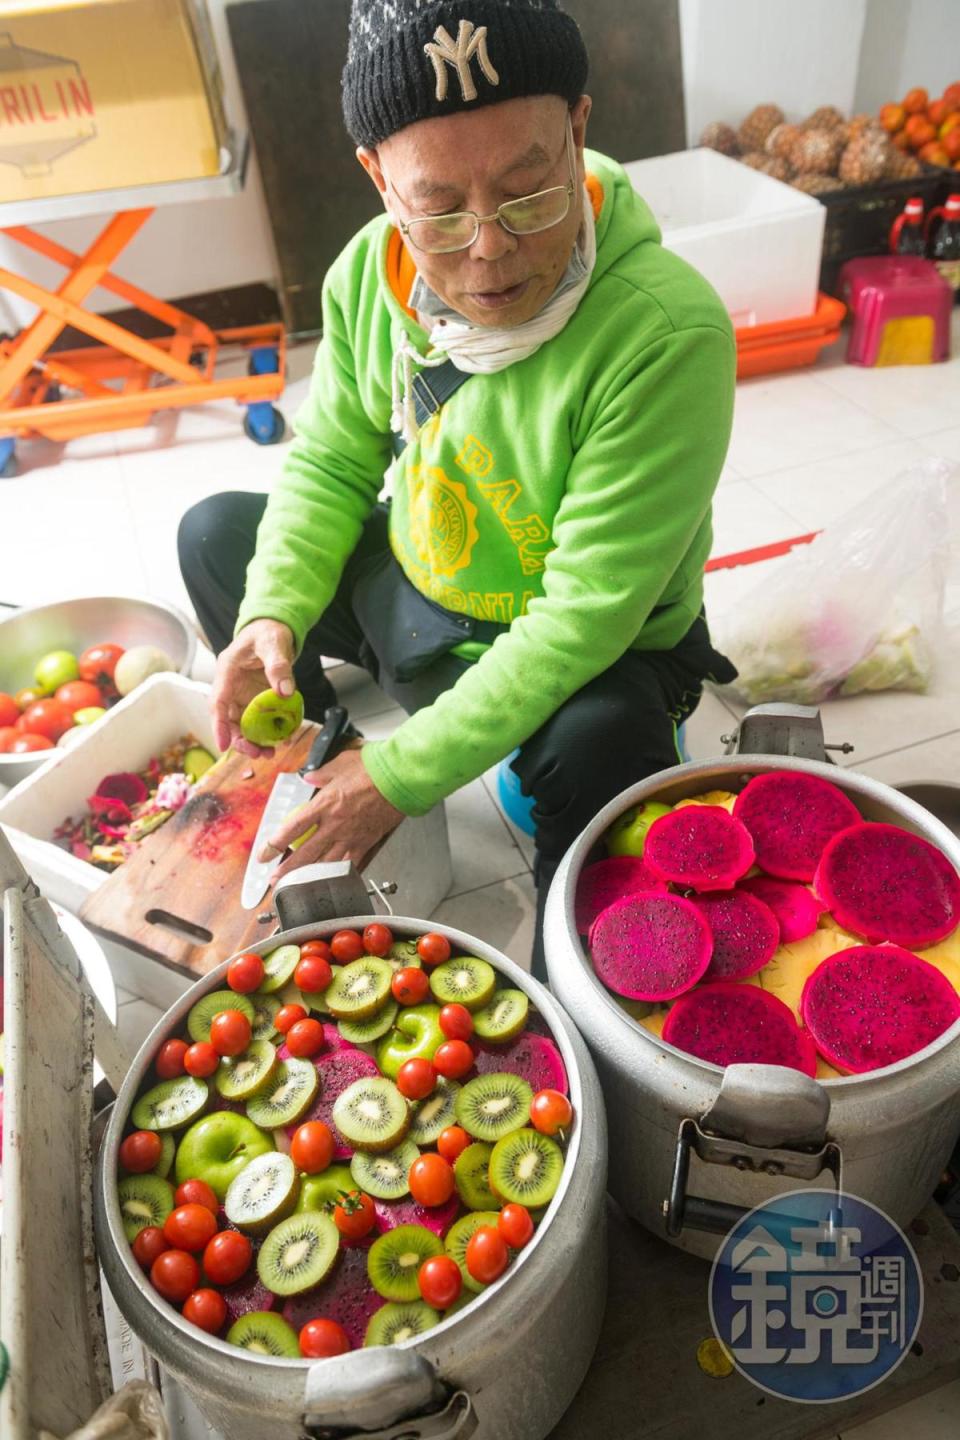 老闆每天切水果鋪在鍋面，有如普普藝術創作。